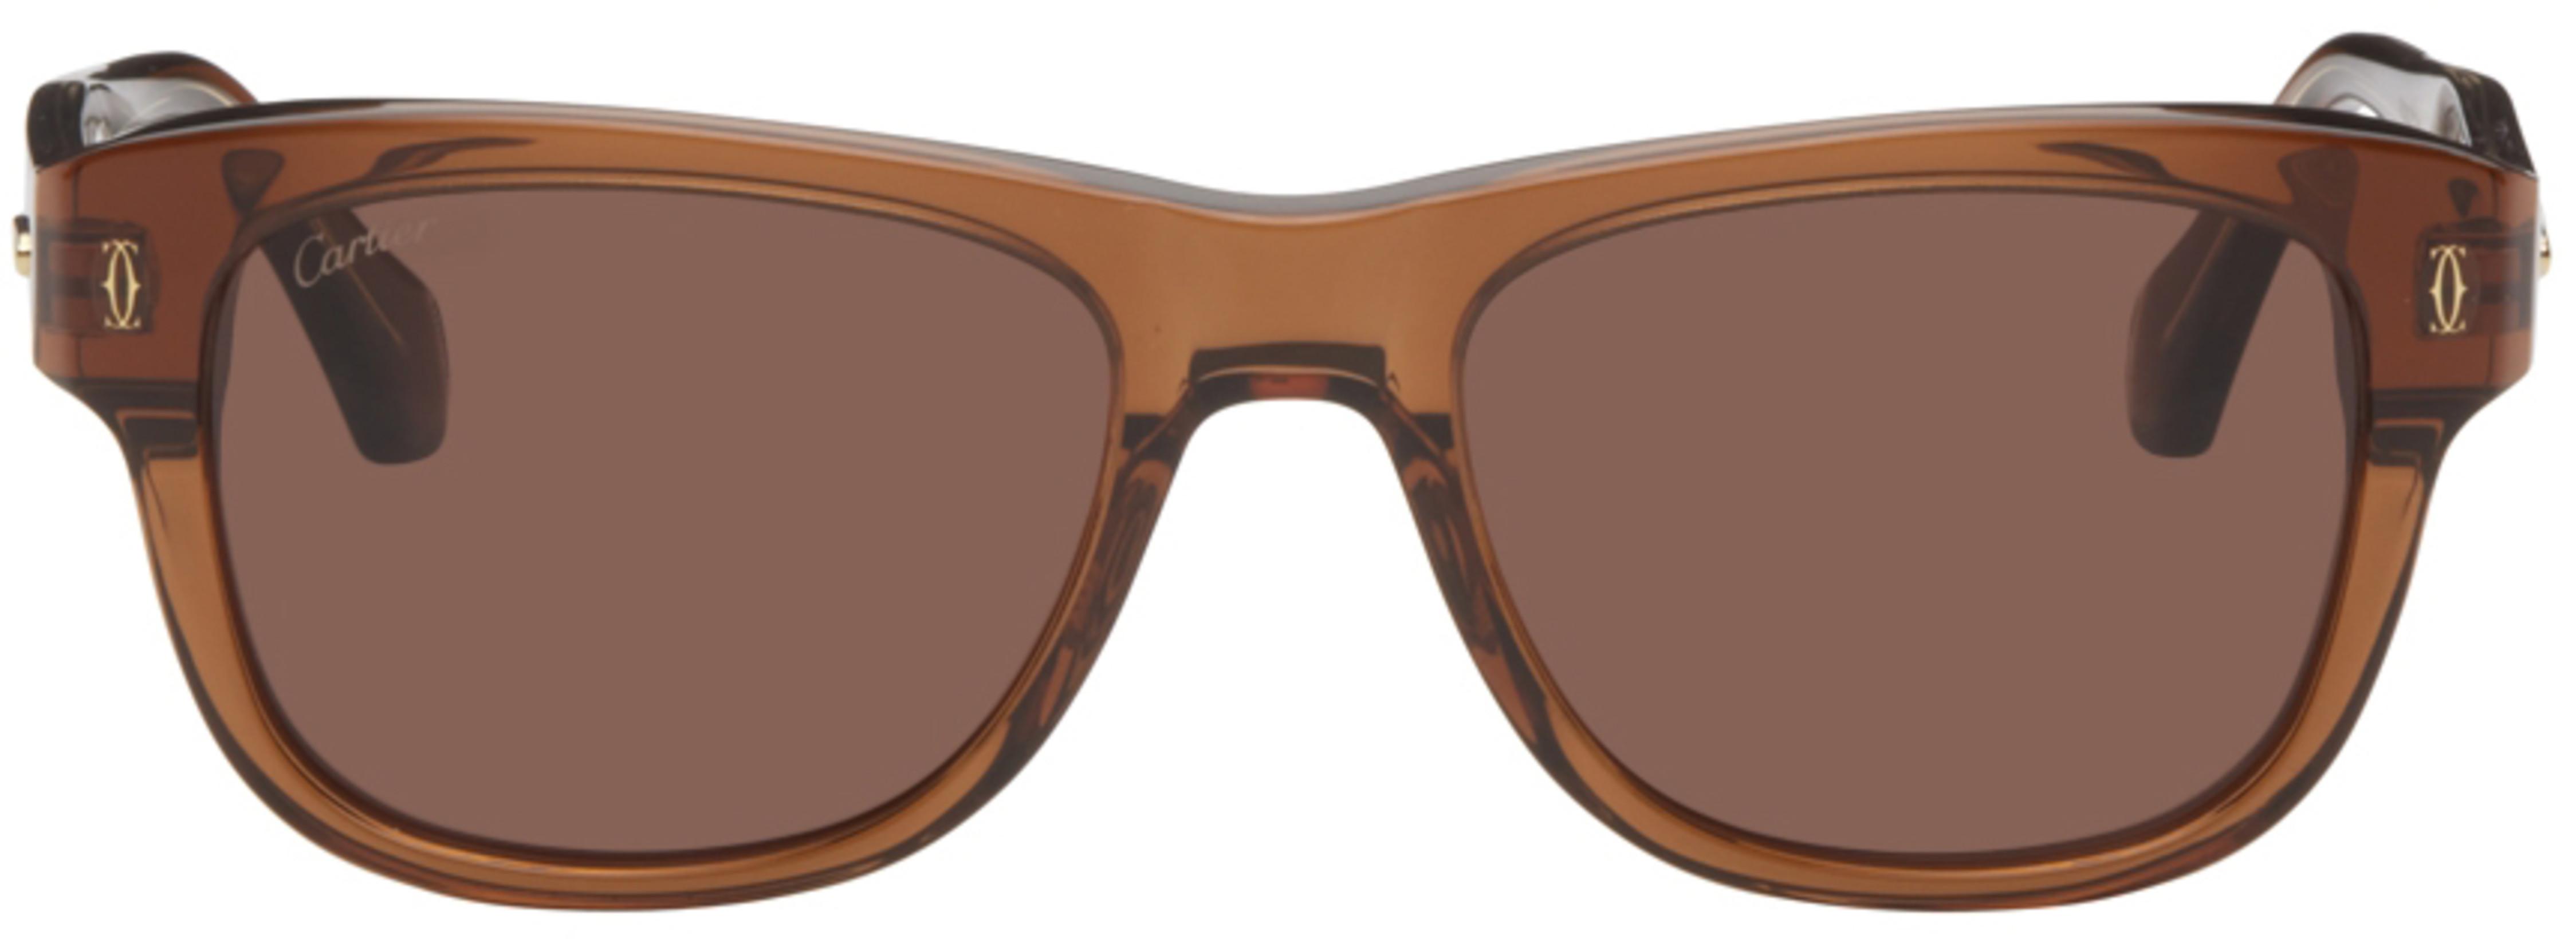 Brown 'C de Cartier' Rectangular Sunglasses by CARTIER